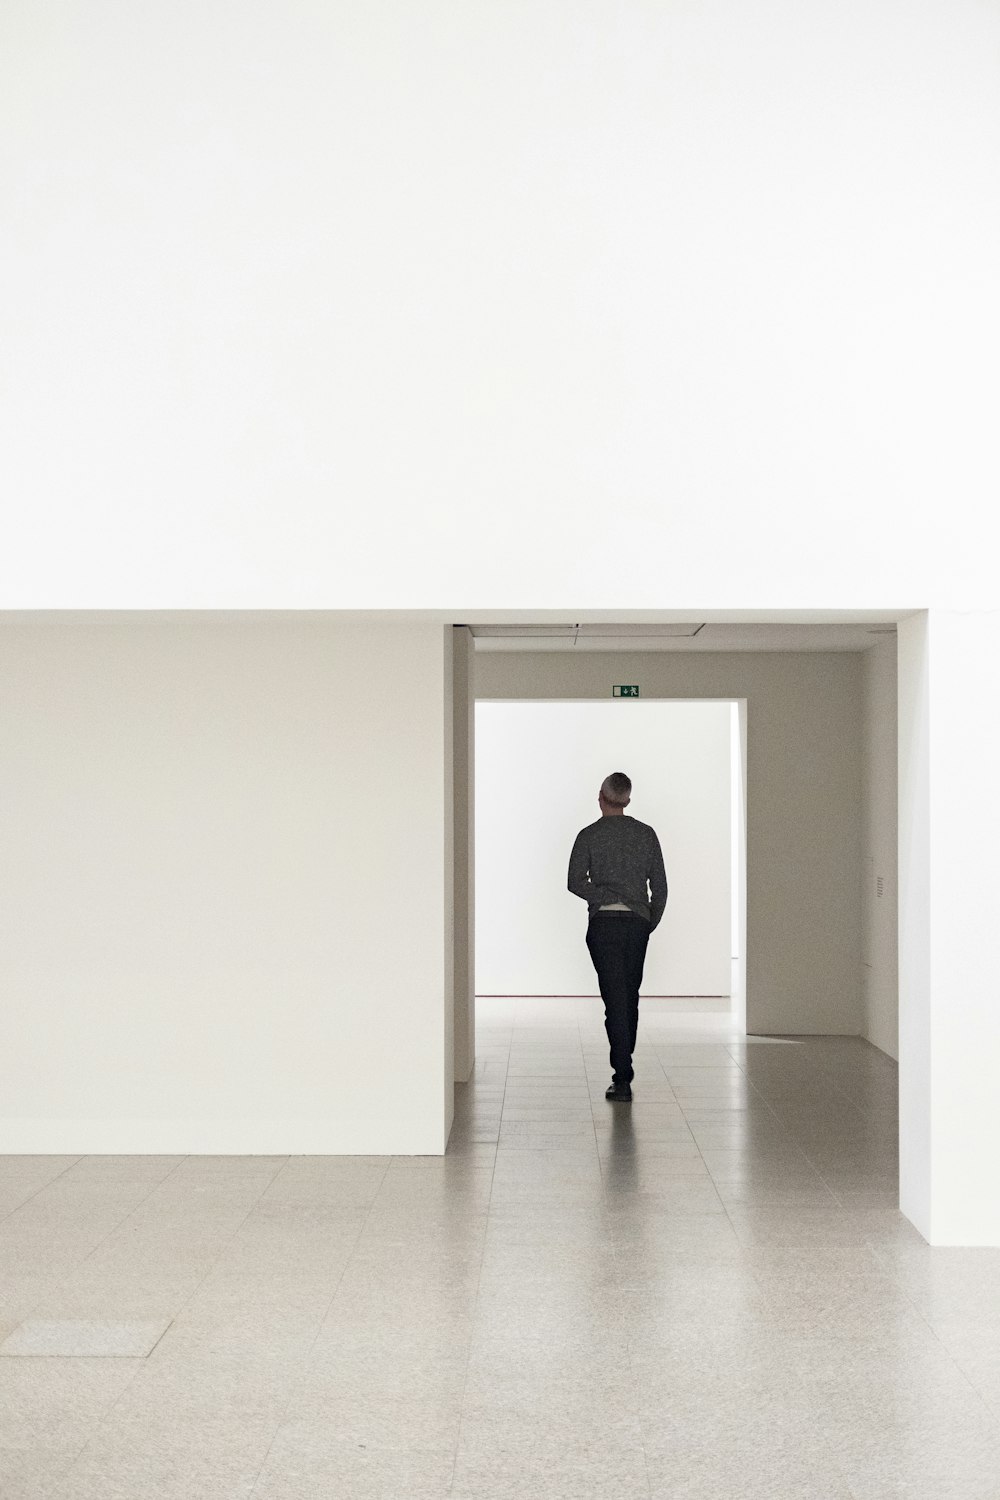 a man is walking through a white room